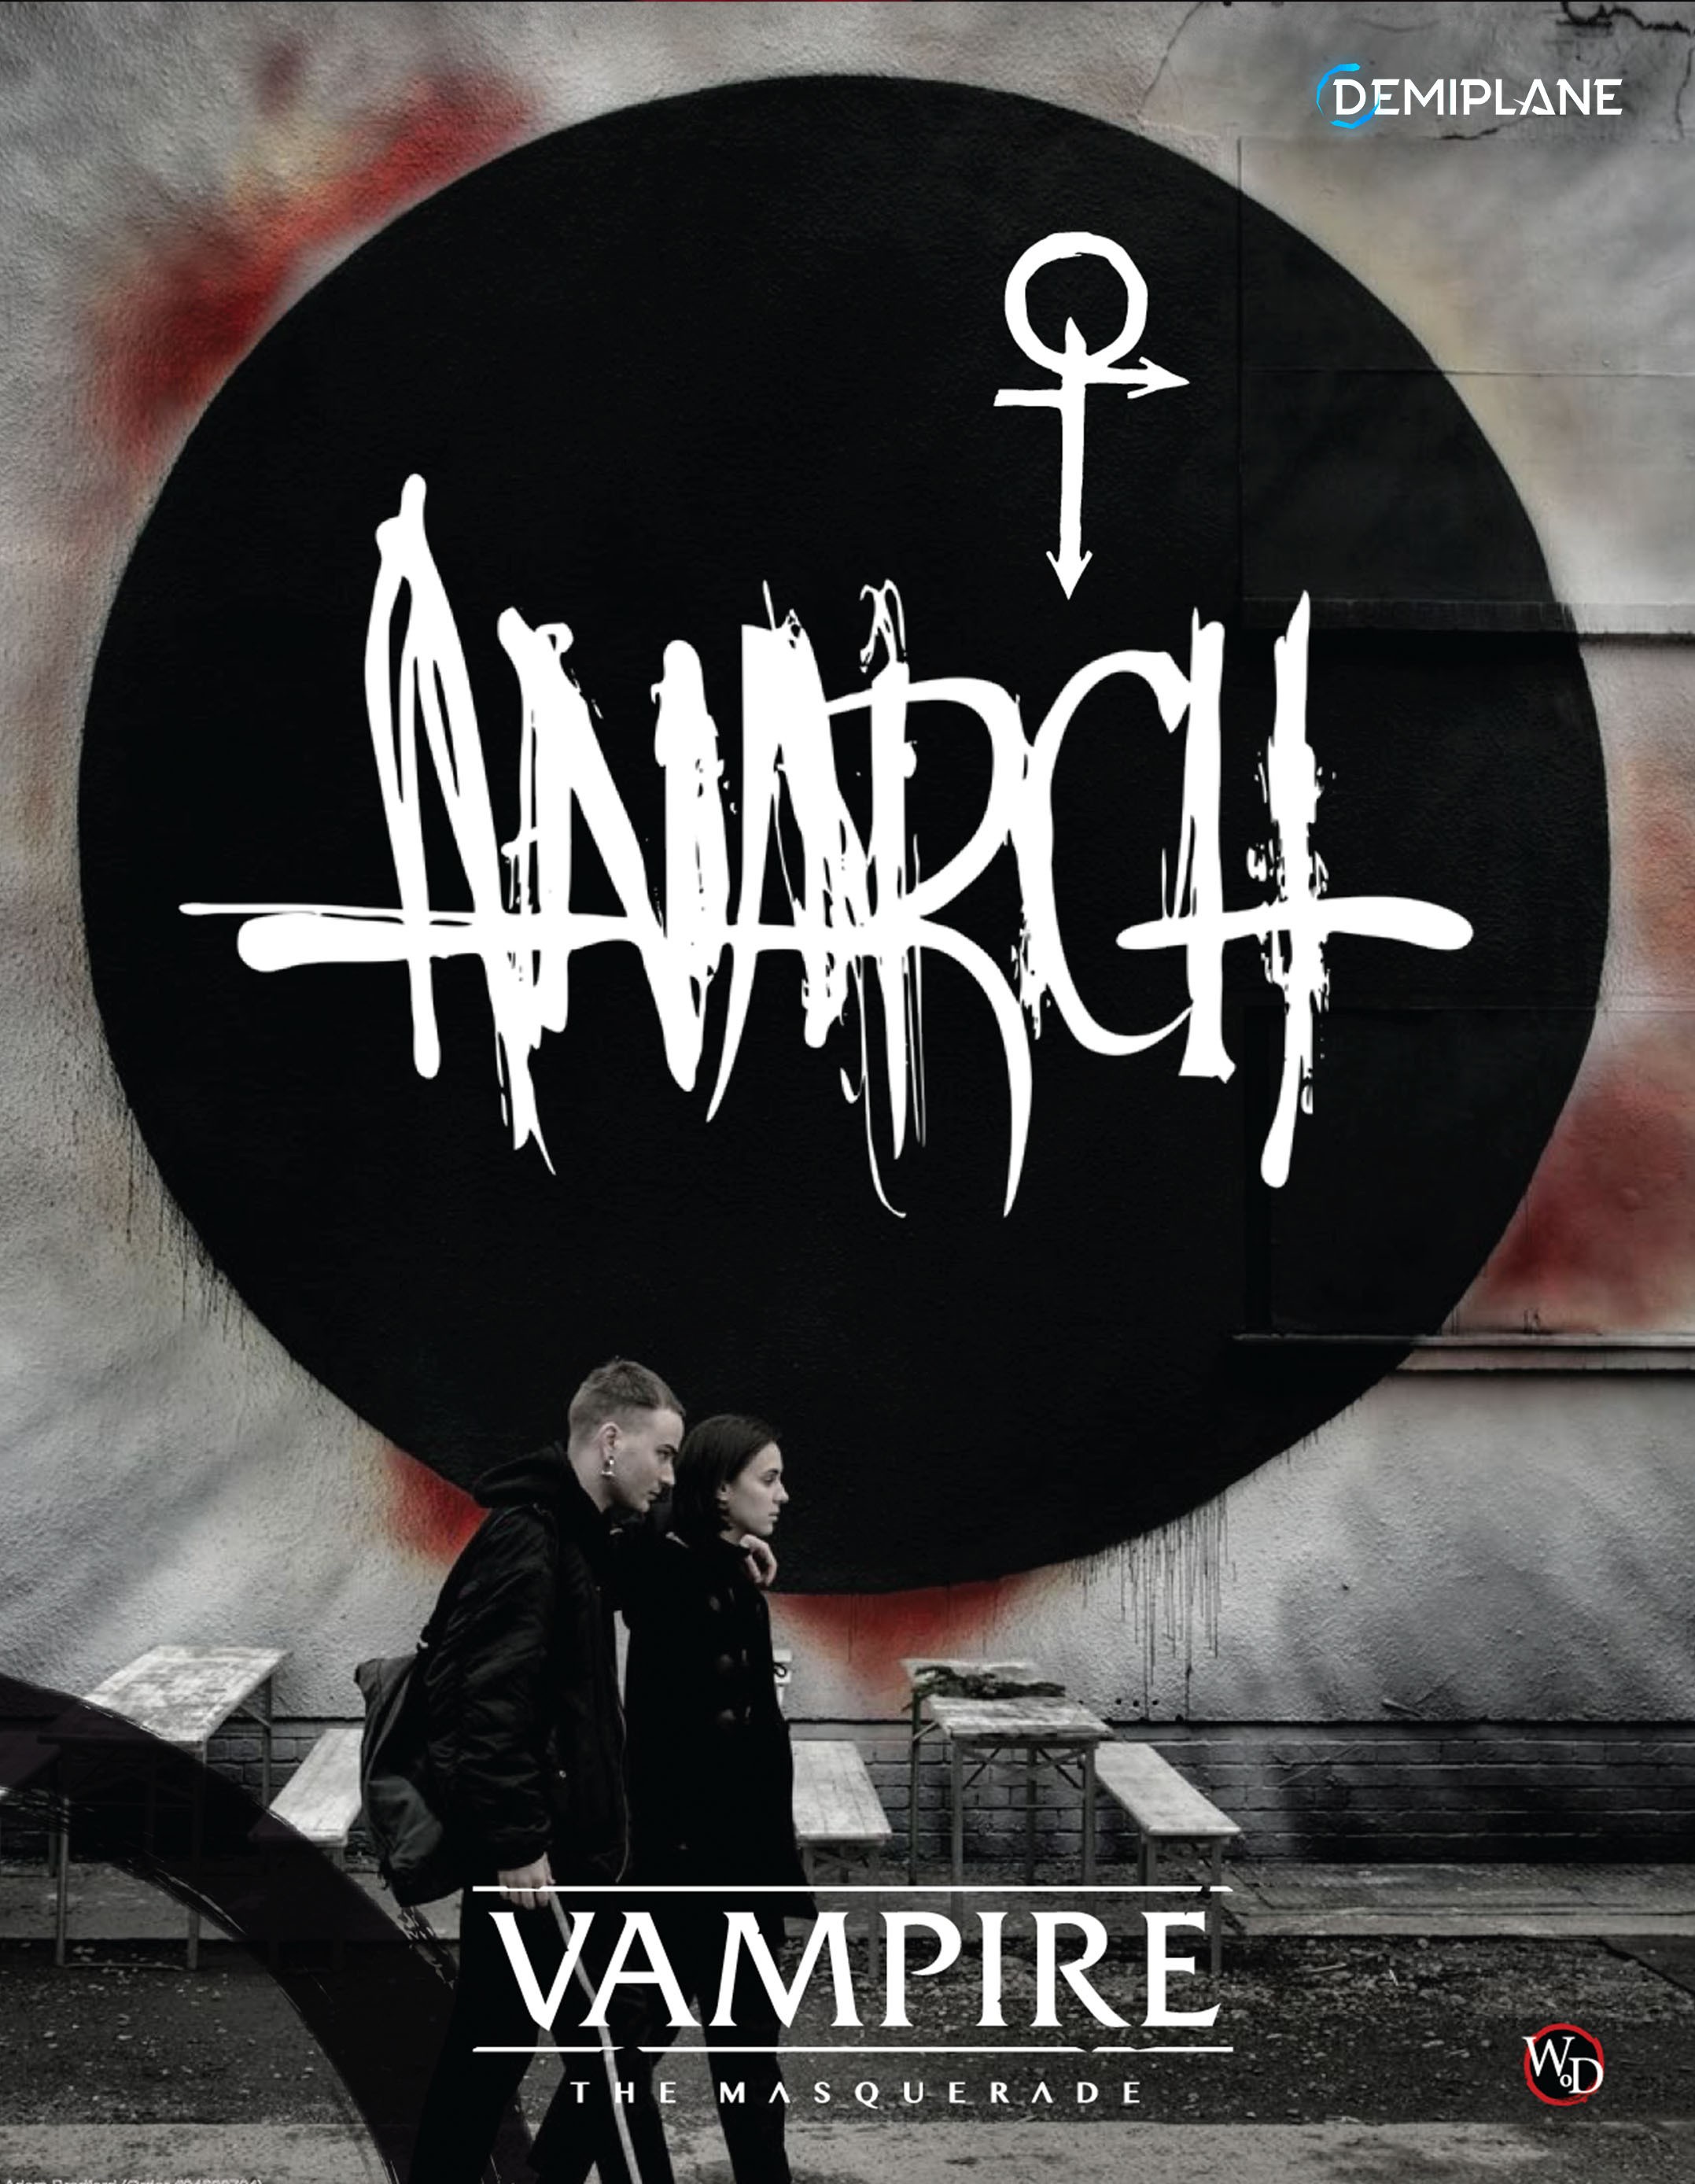 Anarch Sourcebook